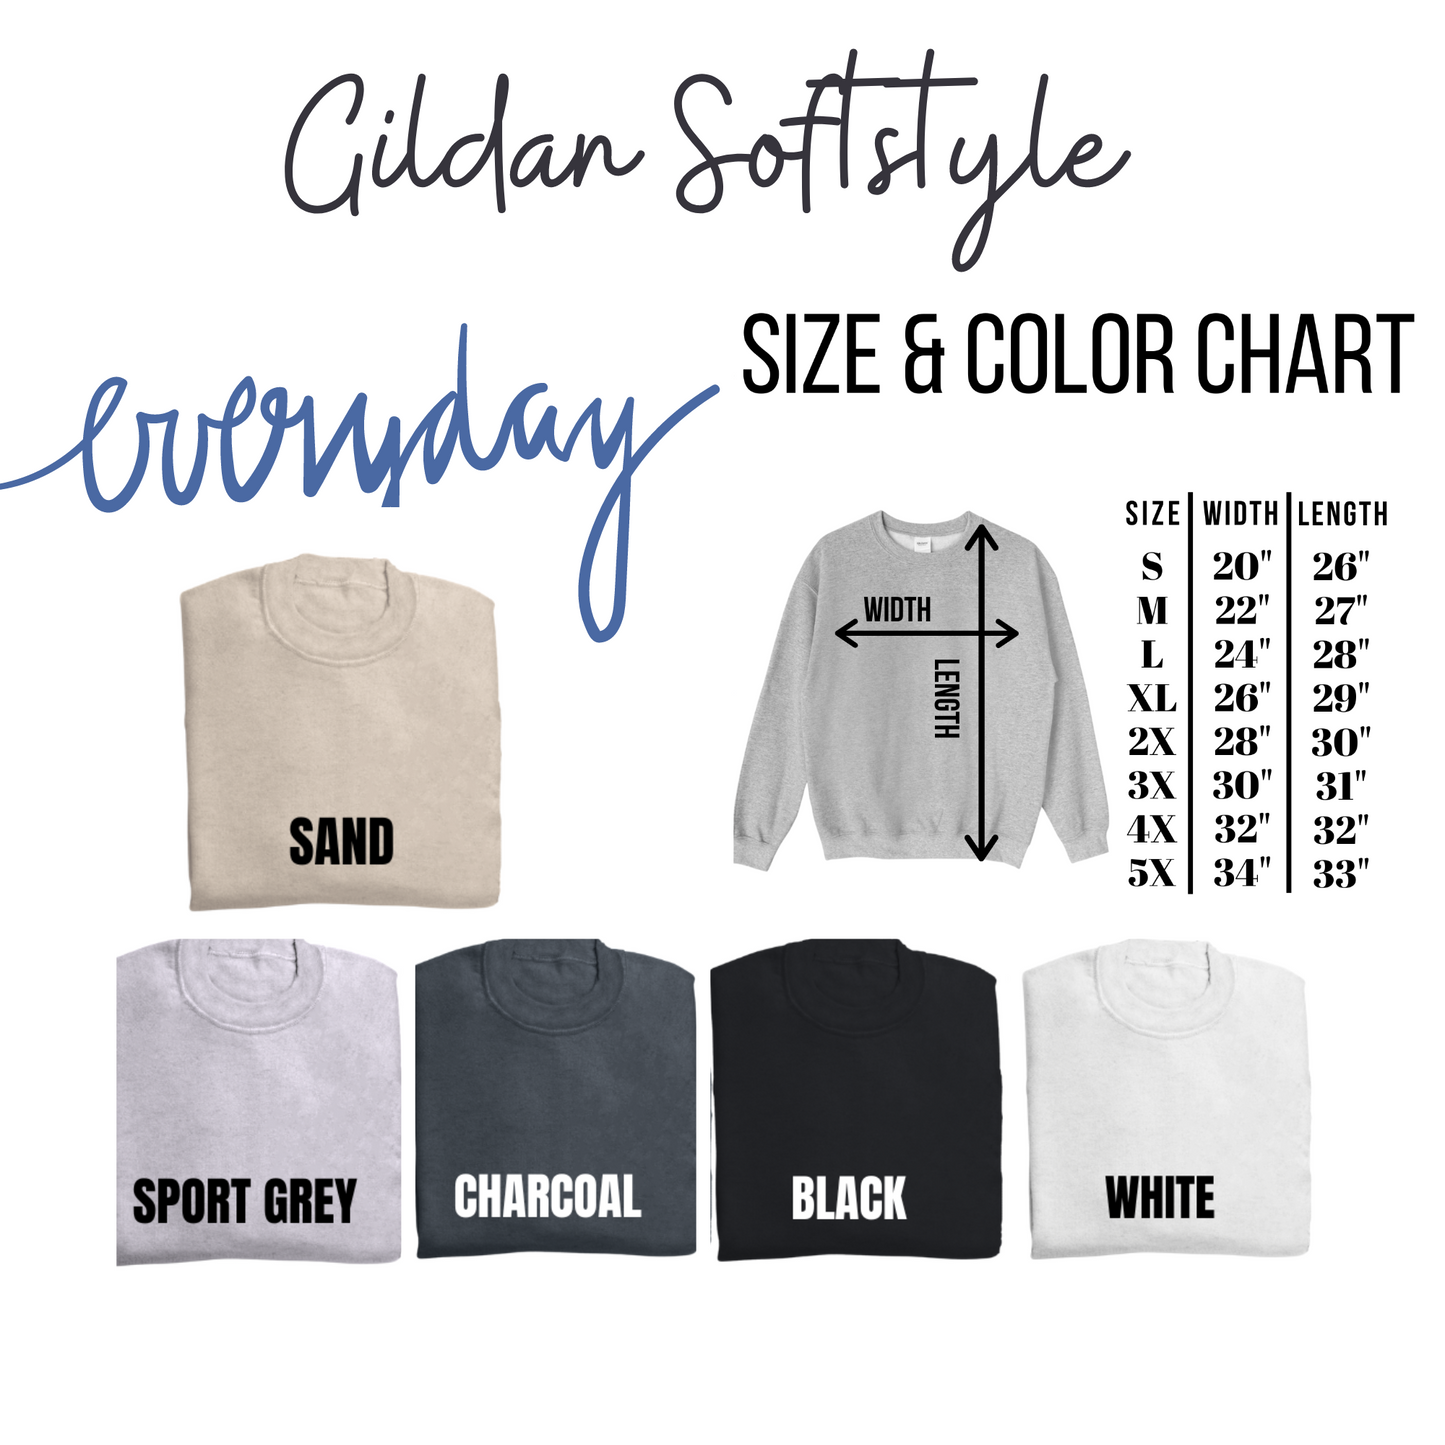 Happy Go Lucky Gildan Softstyle Tshirt or Sweatshirt